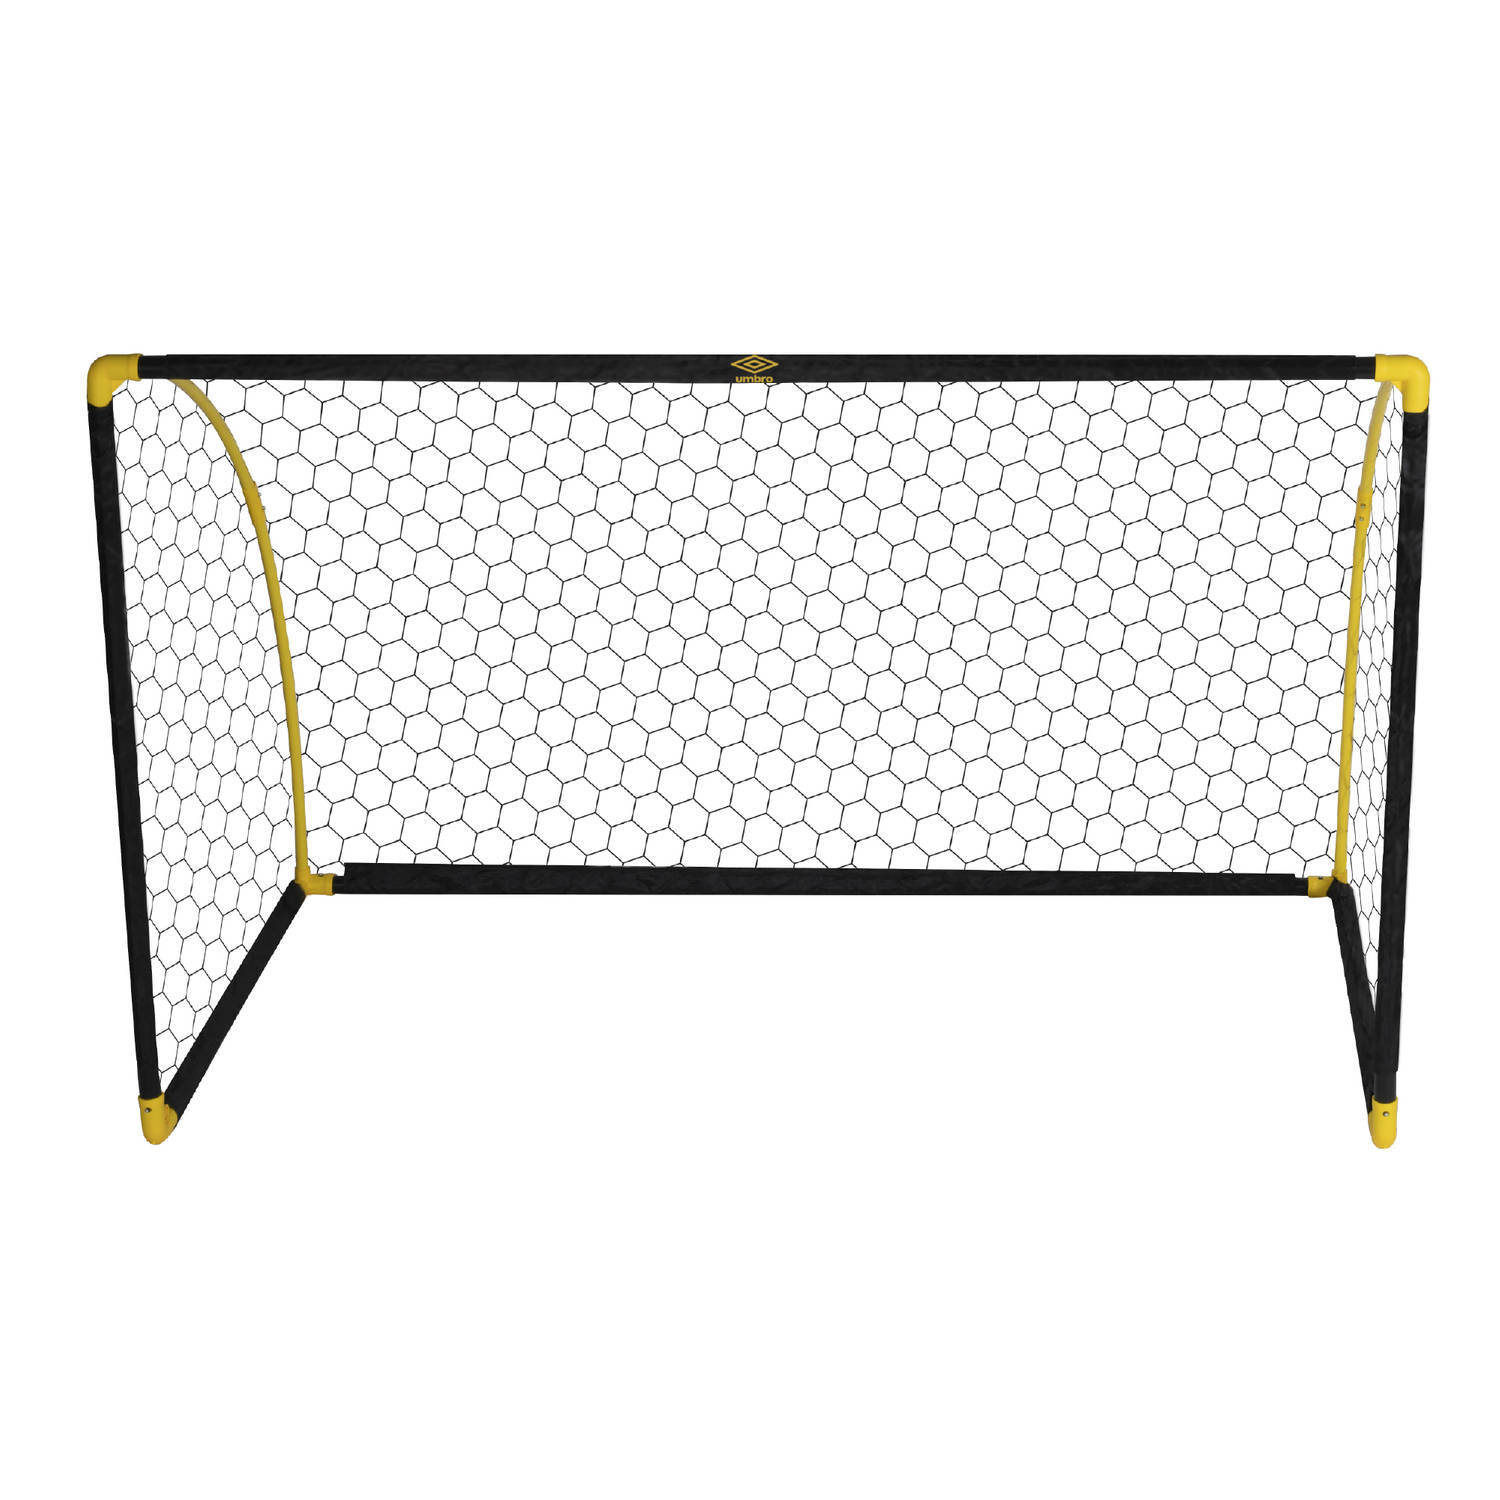 Umbro voetbaldoel - opvouwbare voetbalgoal - 180 x 91 x 120 cm - zwart/geel